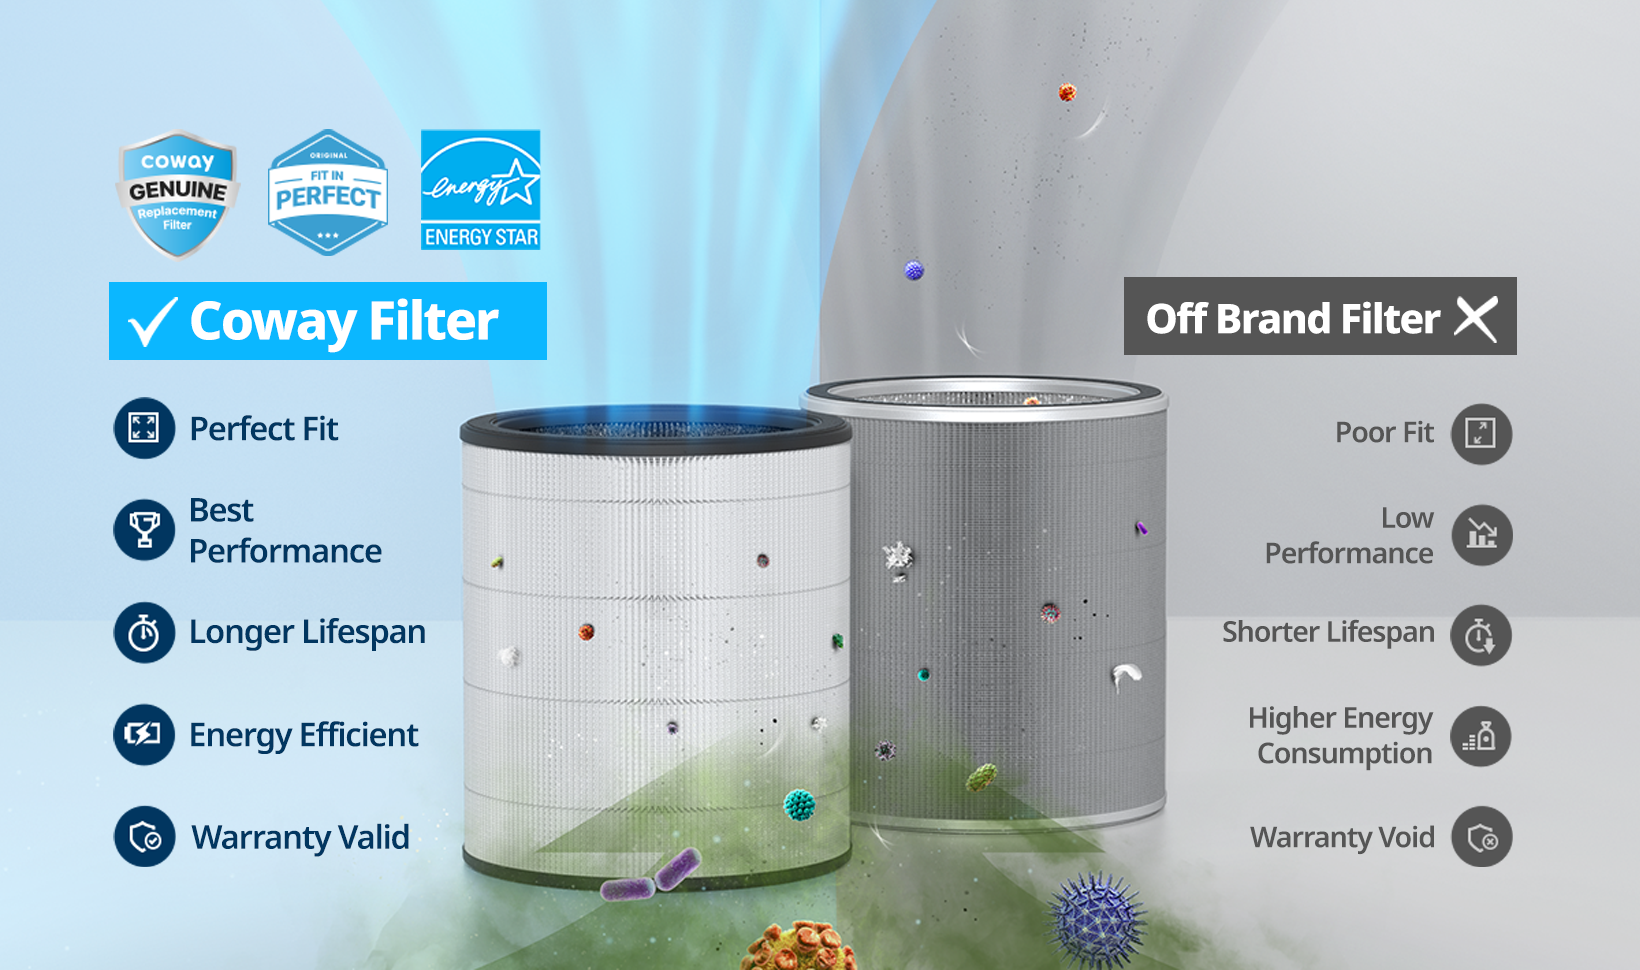 Coway Filter vs Off Brand Filter